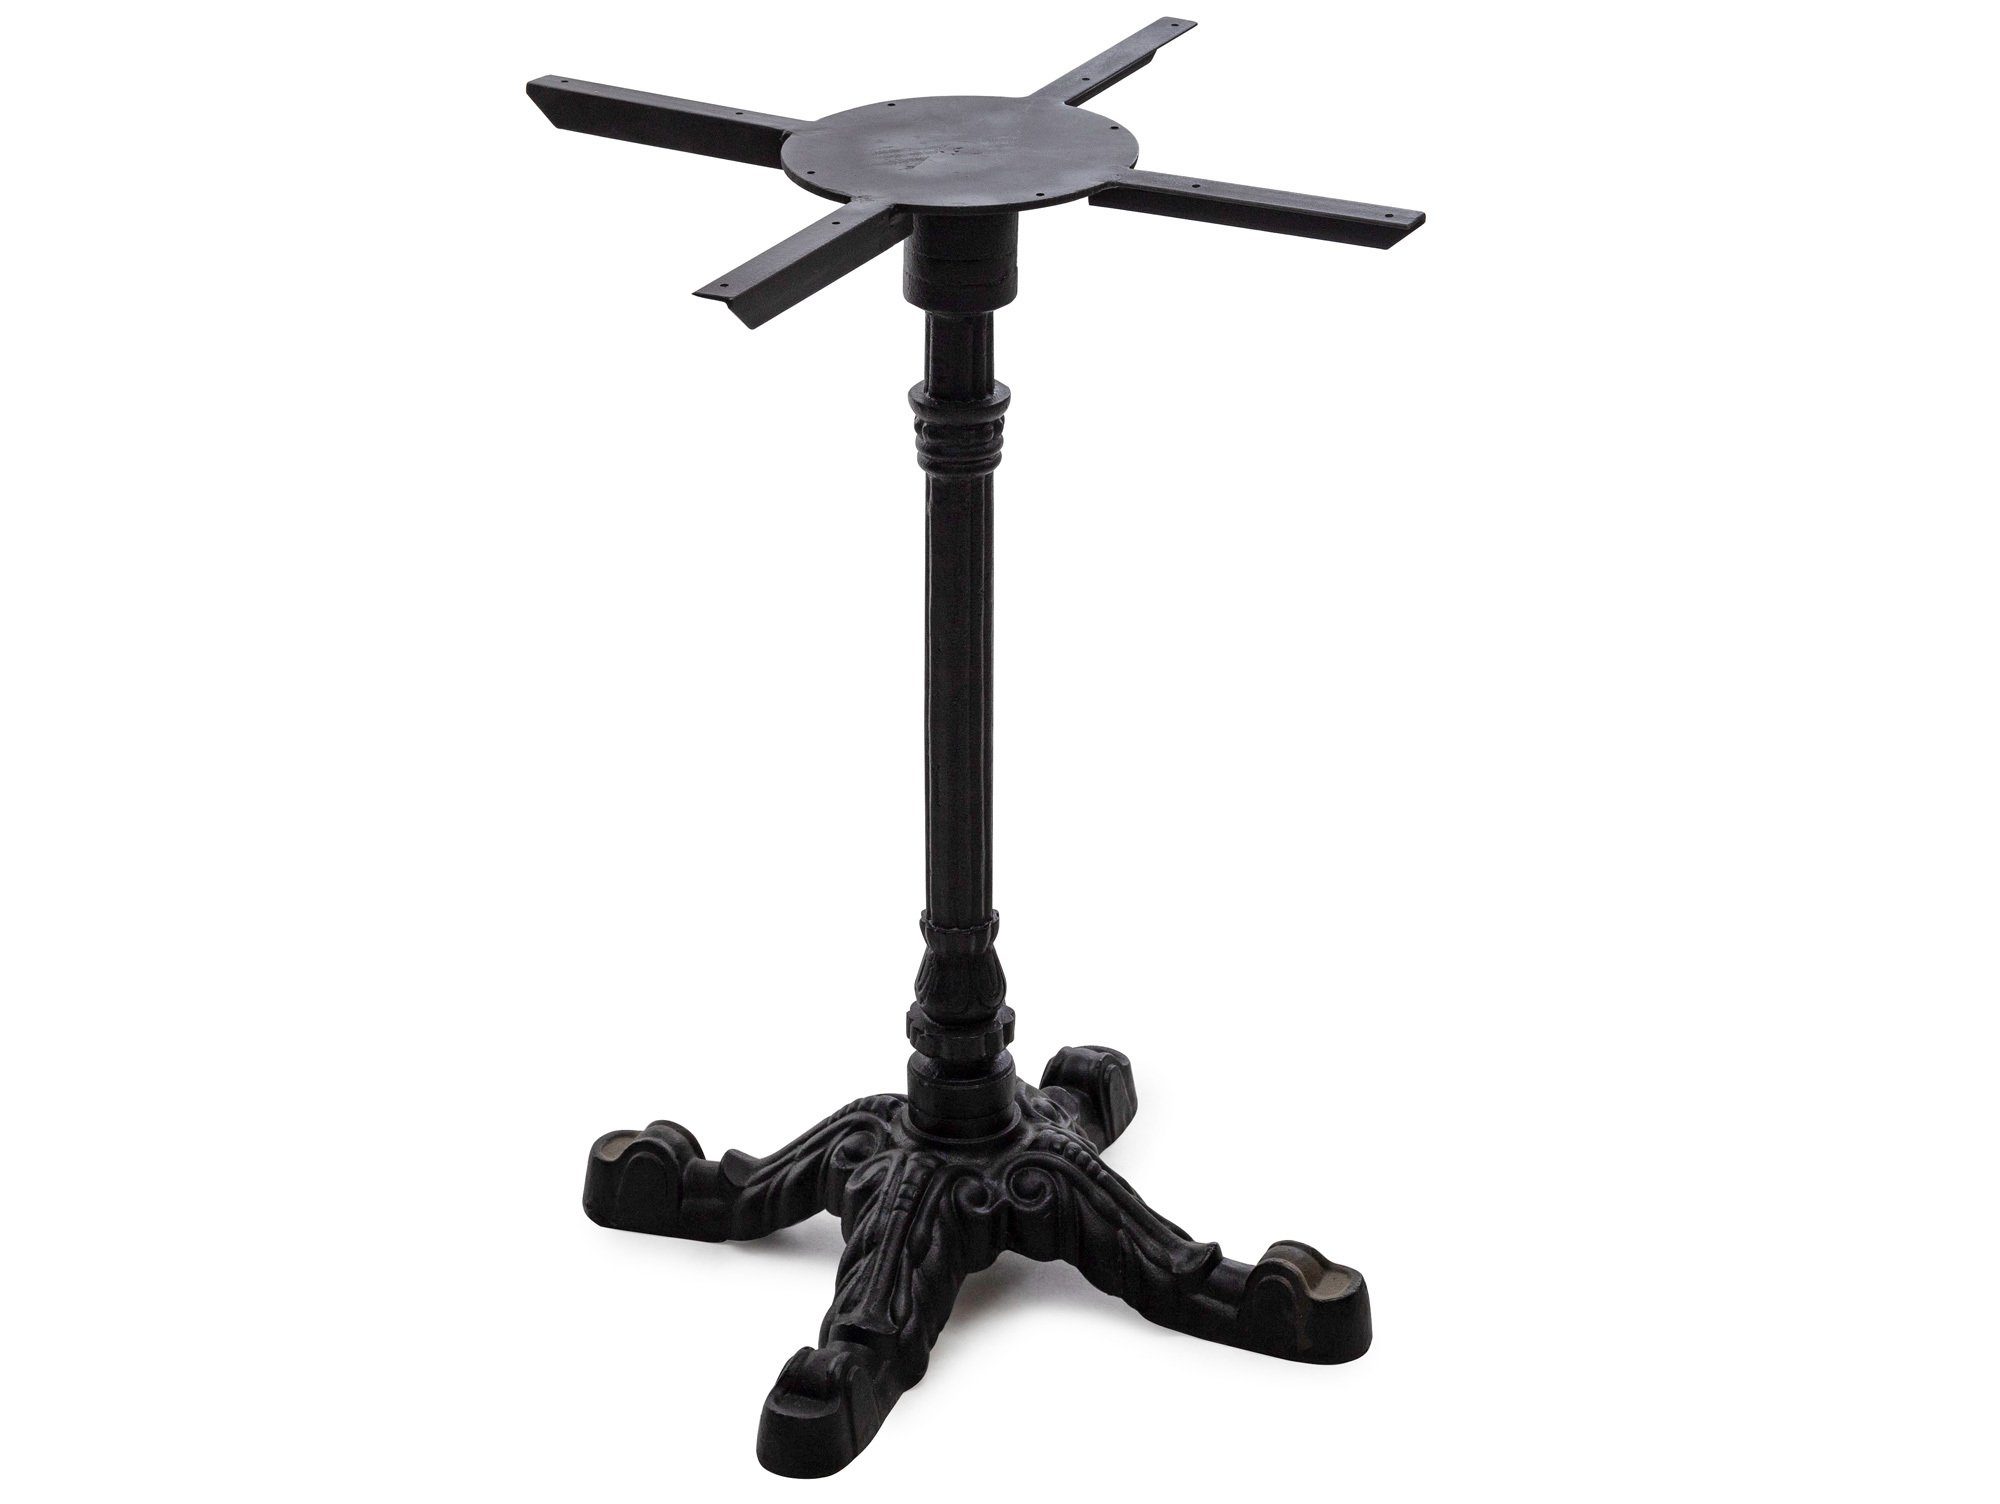 Moebel-Eins Tischgestell, Tischgestell für Esstisch, Material Metall, schwarz lackiert, Höhe: 73 cm